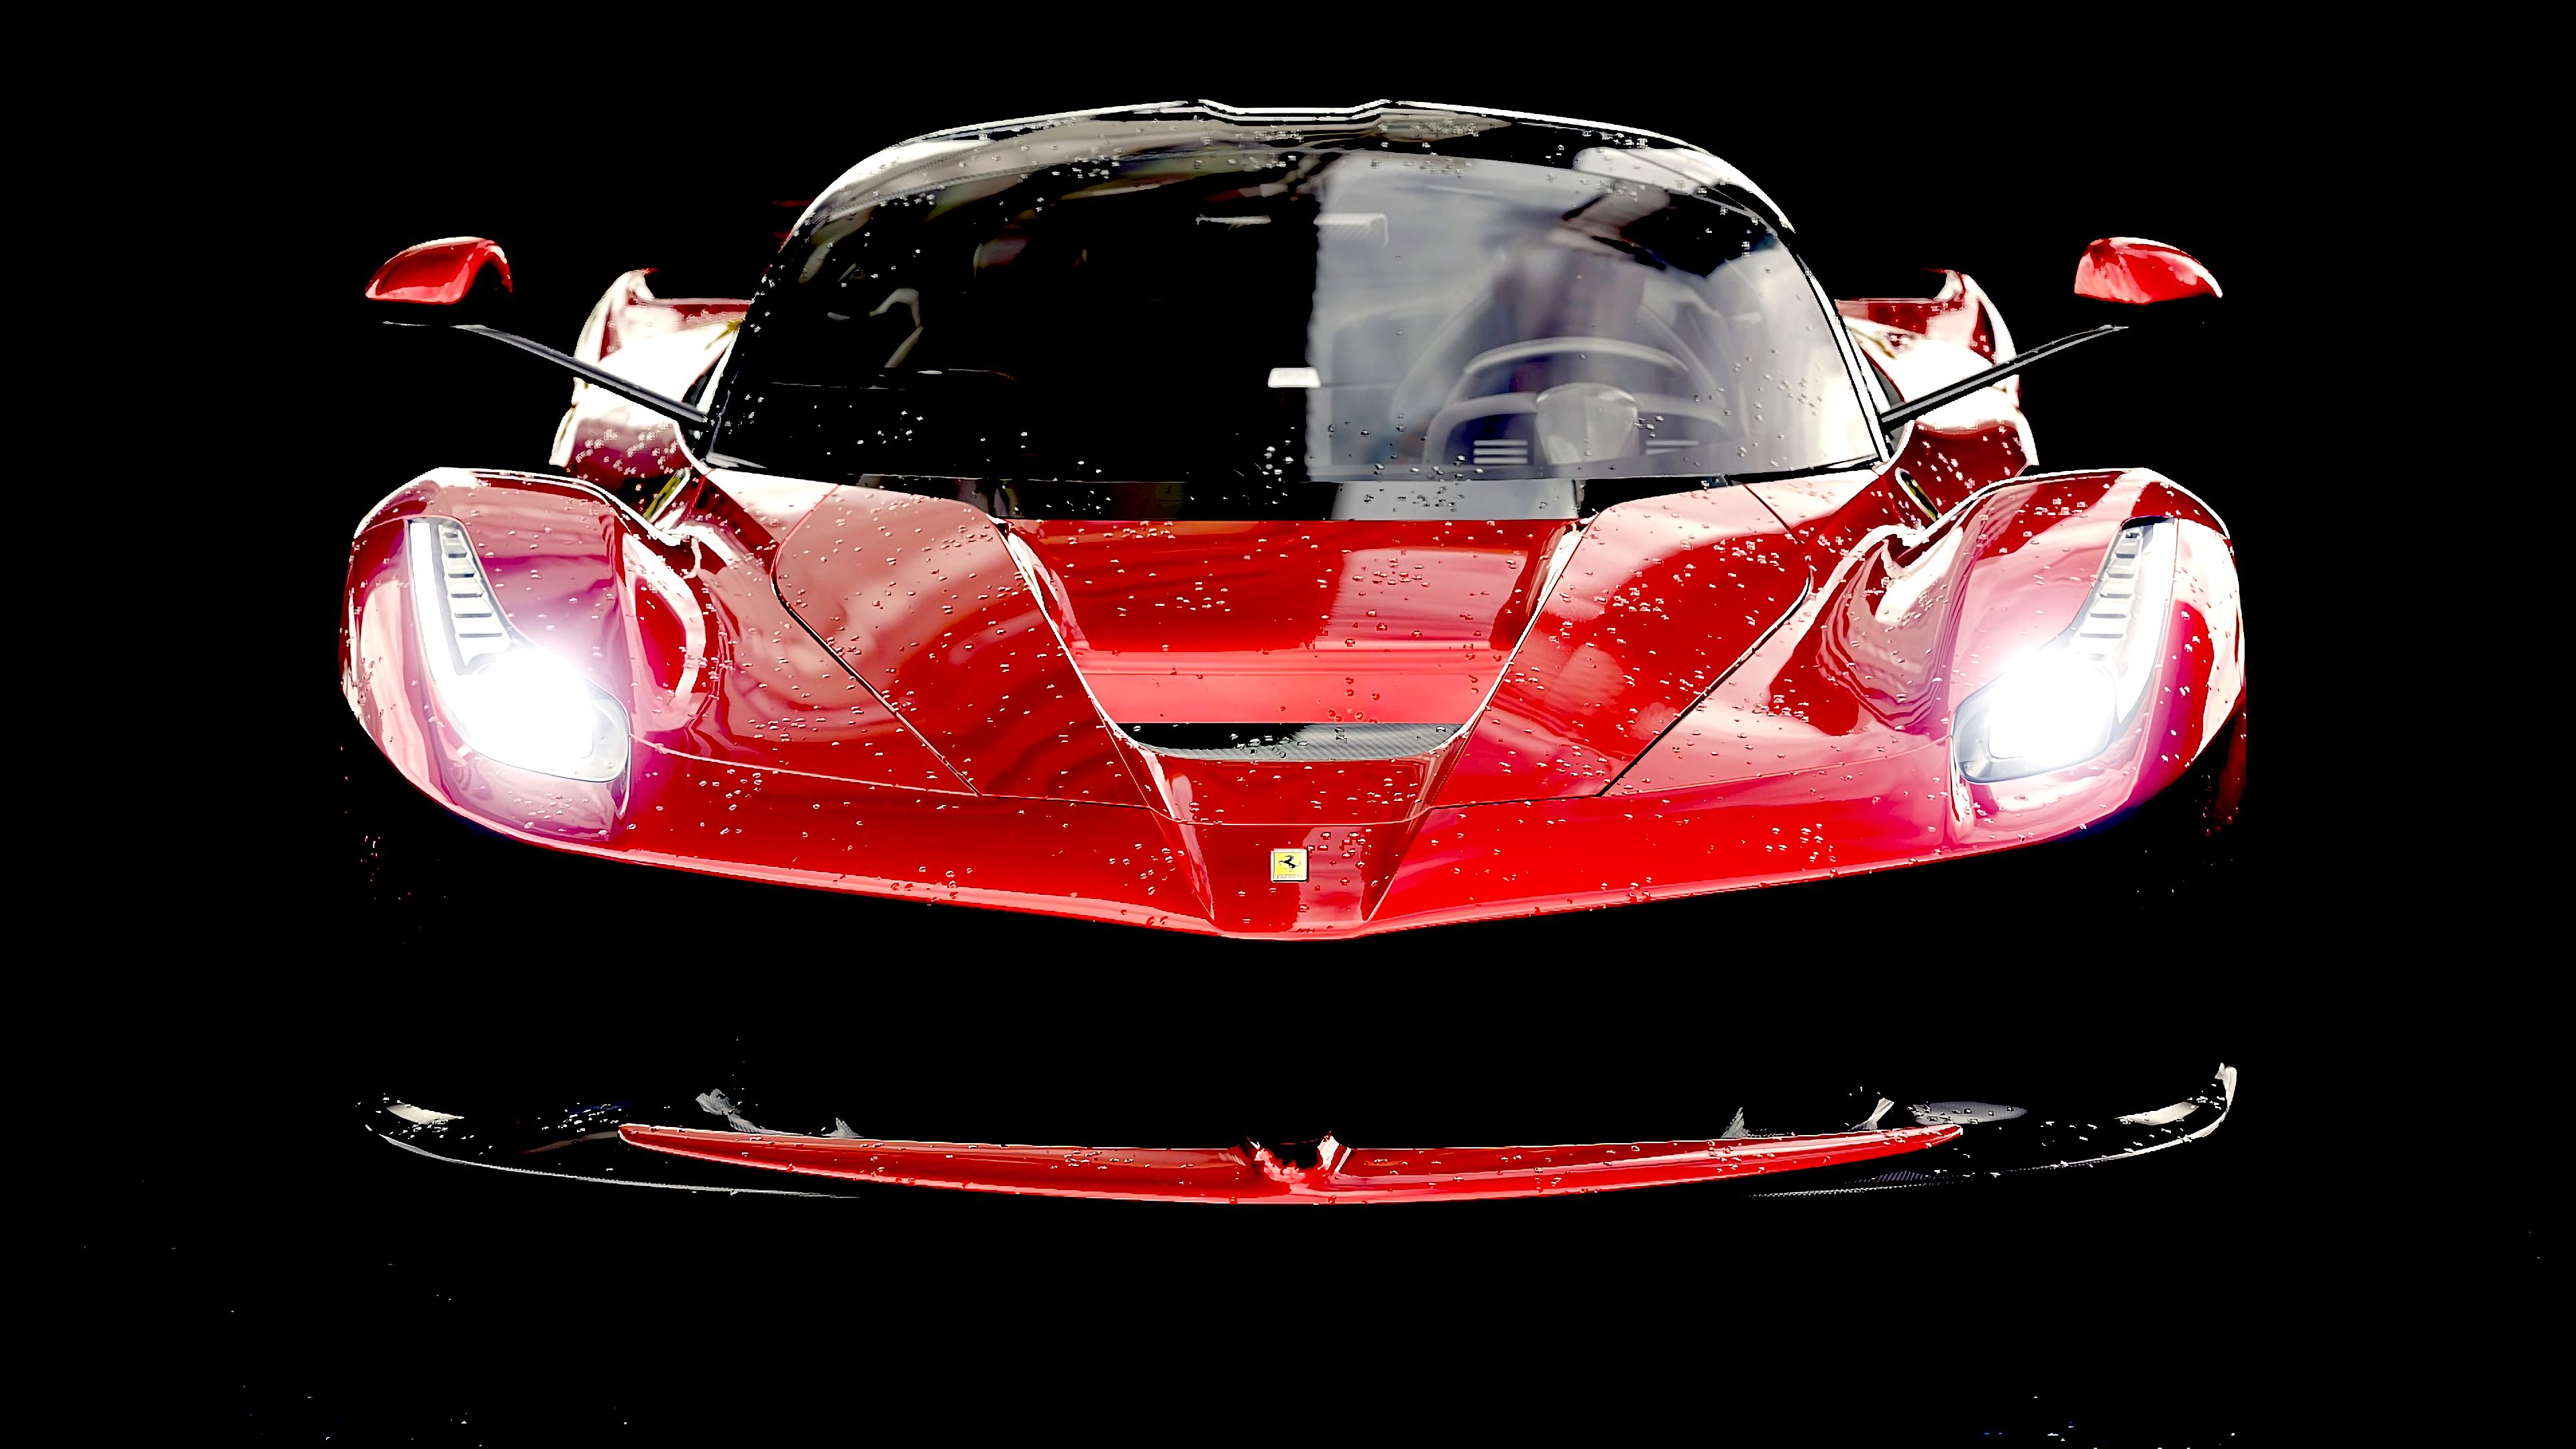 Скачать обои бесплатно Ferrari Laferrari, Тачки (Cars), Красный, Спорткар, Вид Спереди, Феррари (Ferrari) картинка на рабочий стол ПК